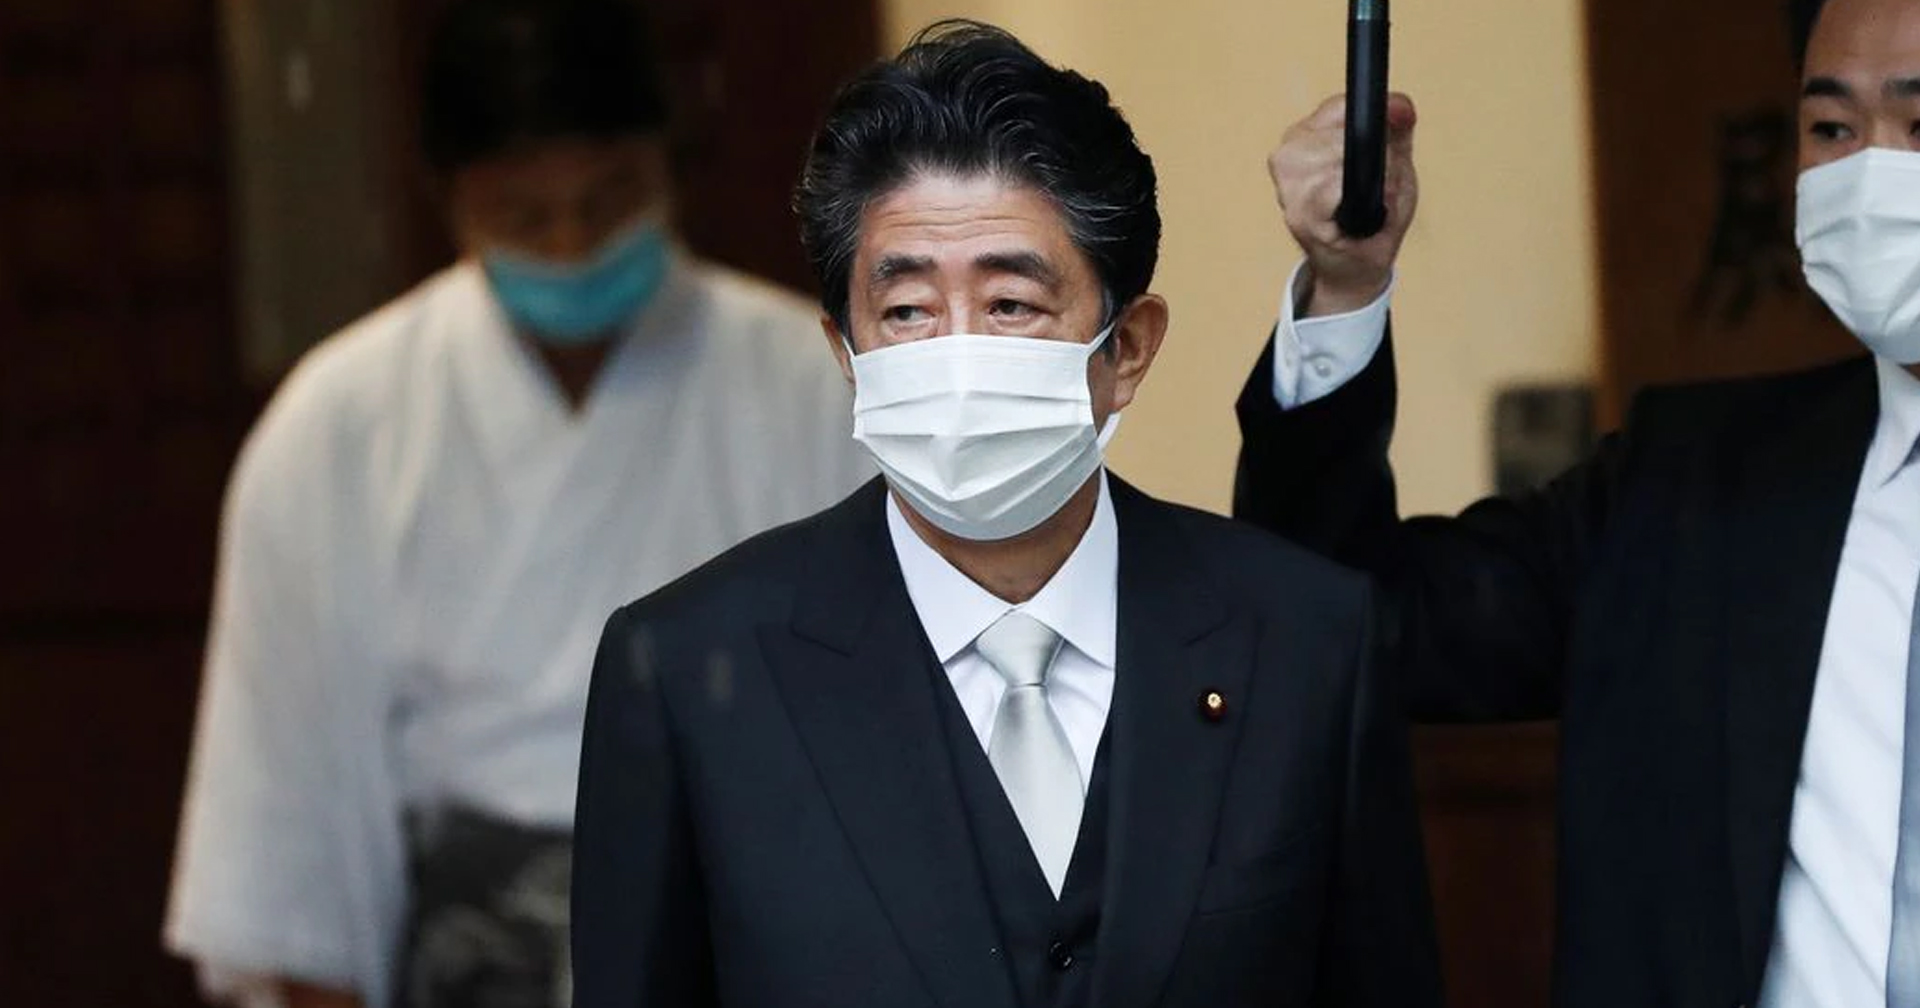 ชินโซ อาเบะ อดีตนายกรัฐมนตรีญี่ปุ่น ถูกลอบยิงขณะปราศรัย เสียชีวิตแล้ว